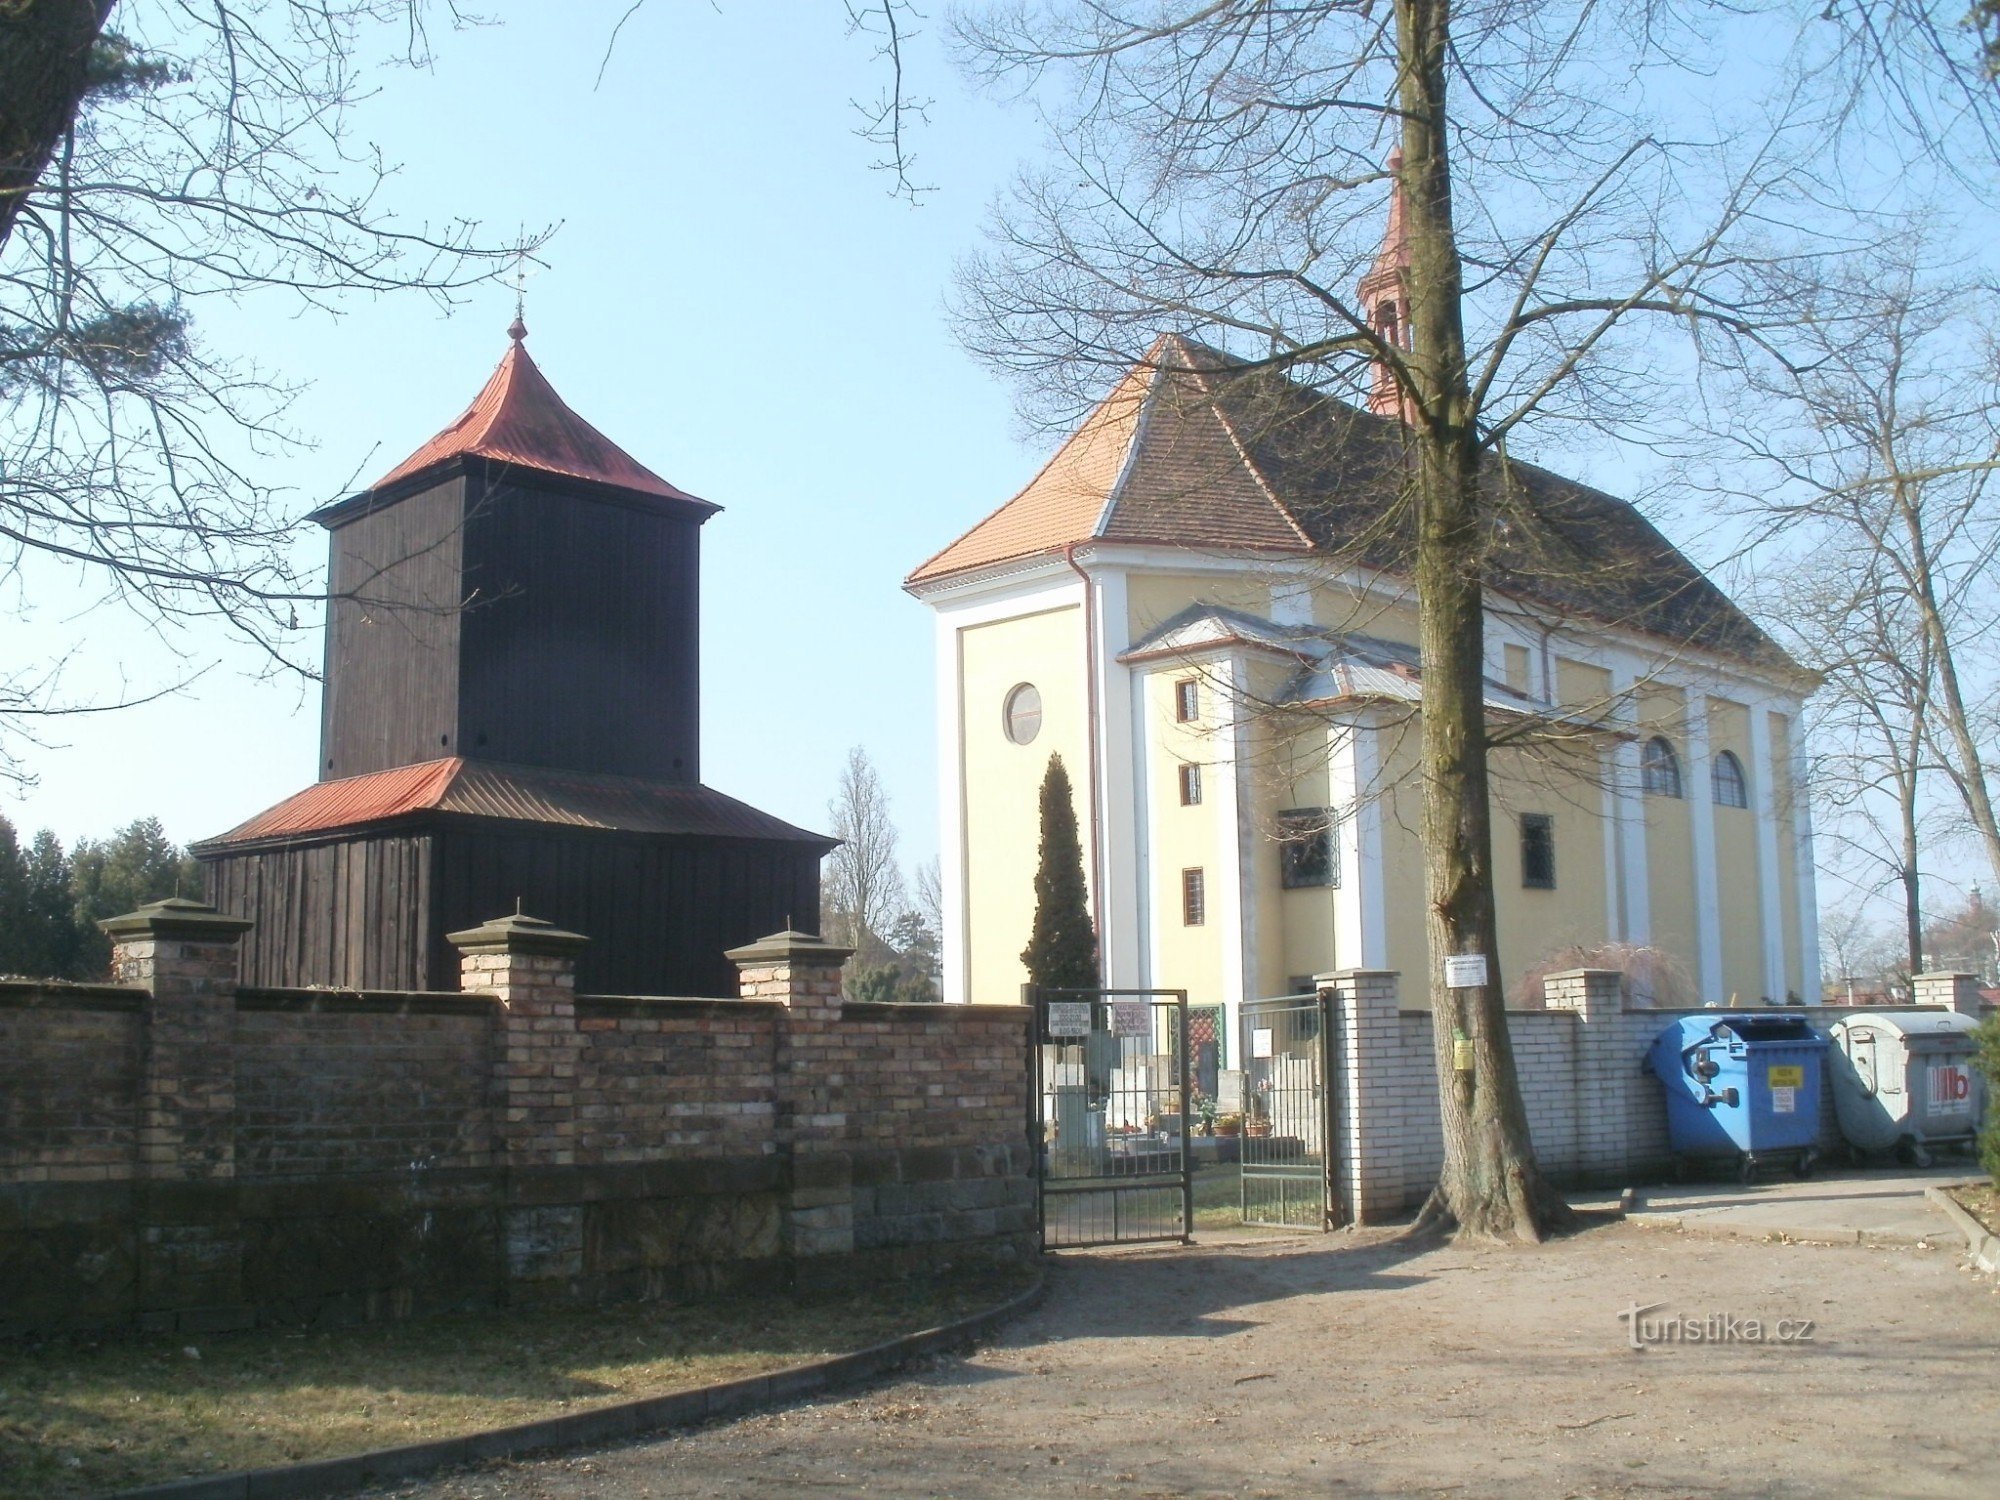 Borohrádek - kerk van St. Michaël de aartsengel